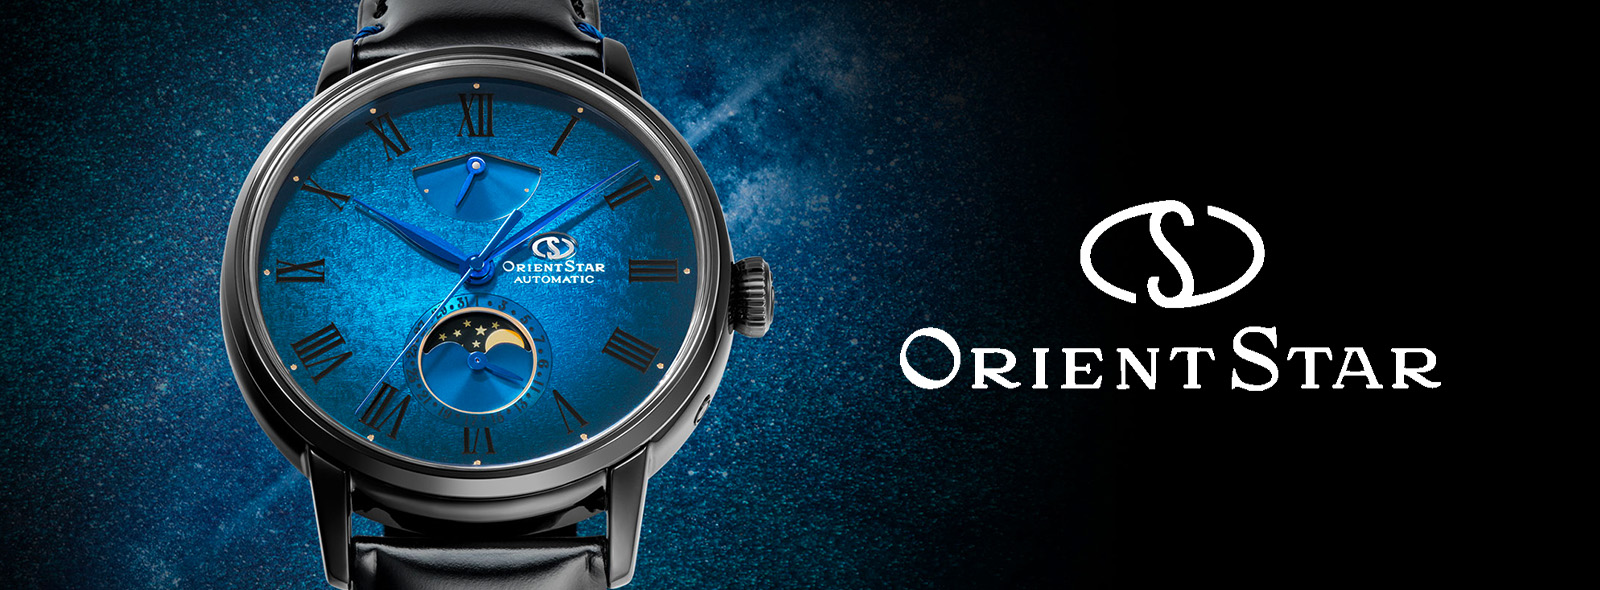 Nocne niebo na nadgarstku: ekskluzywny zegarek Orient Star Moon Phase M45  F7 Limited Edition | Zegarownia.pl Blog